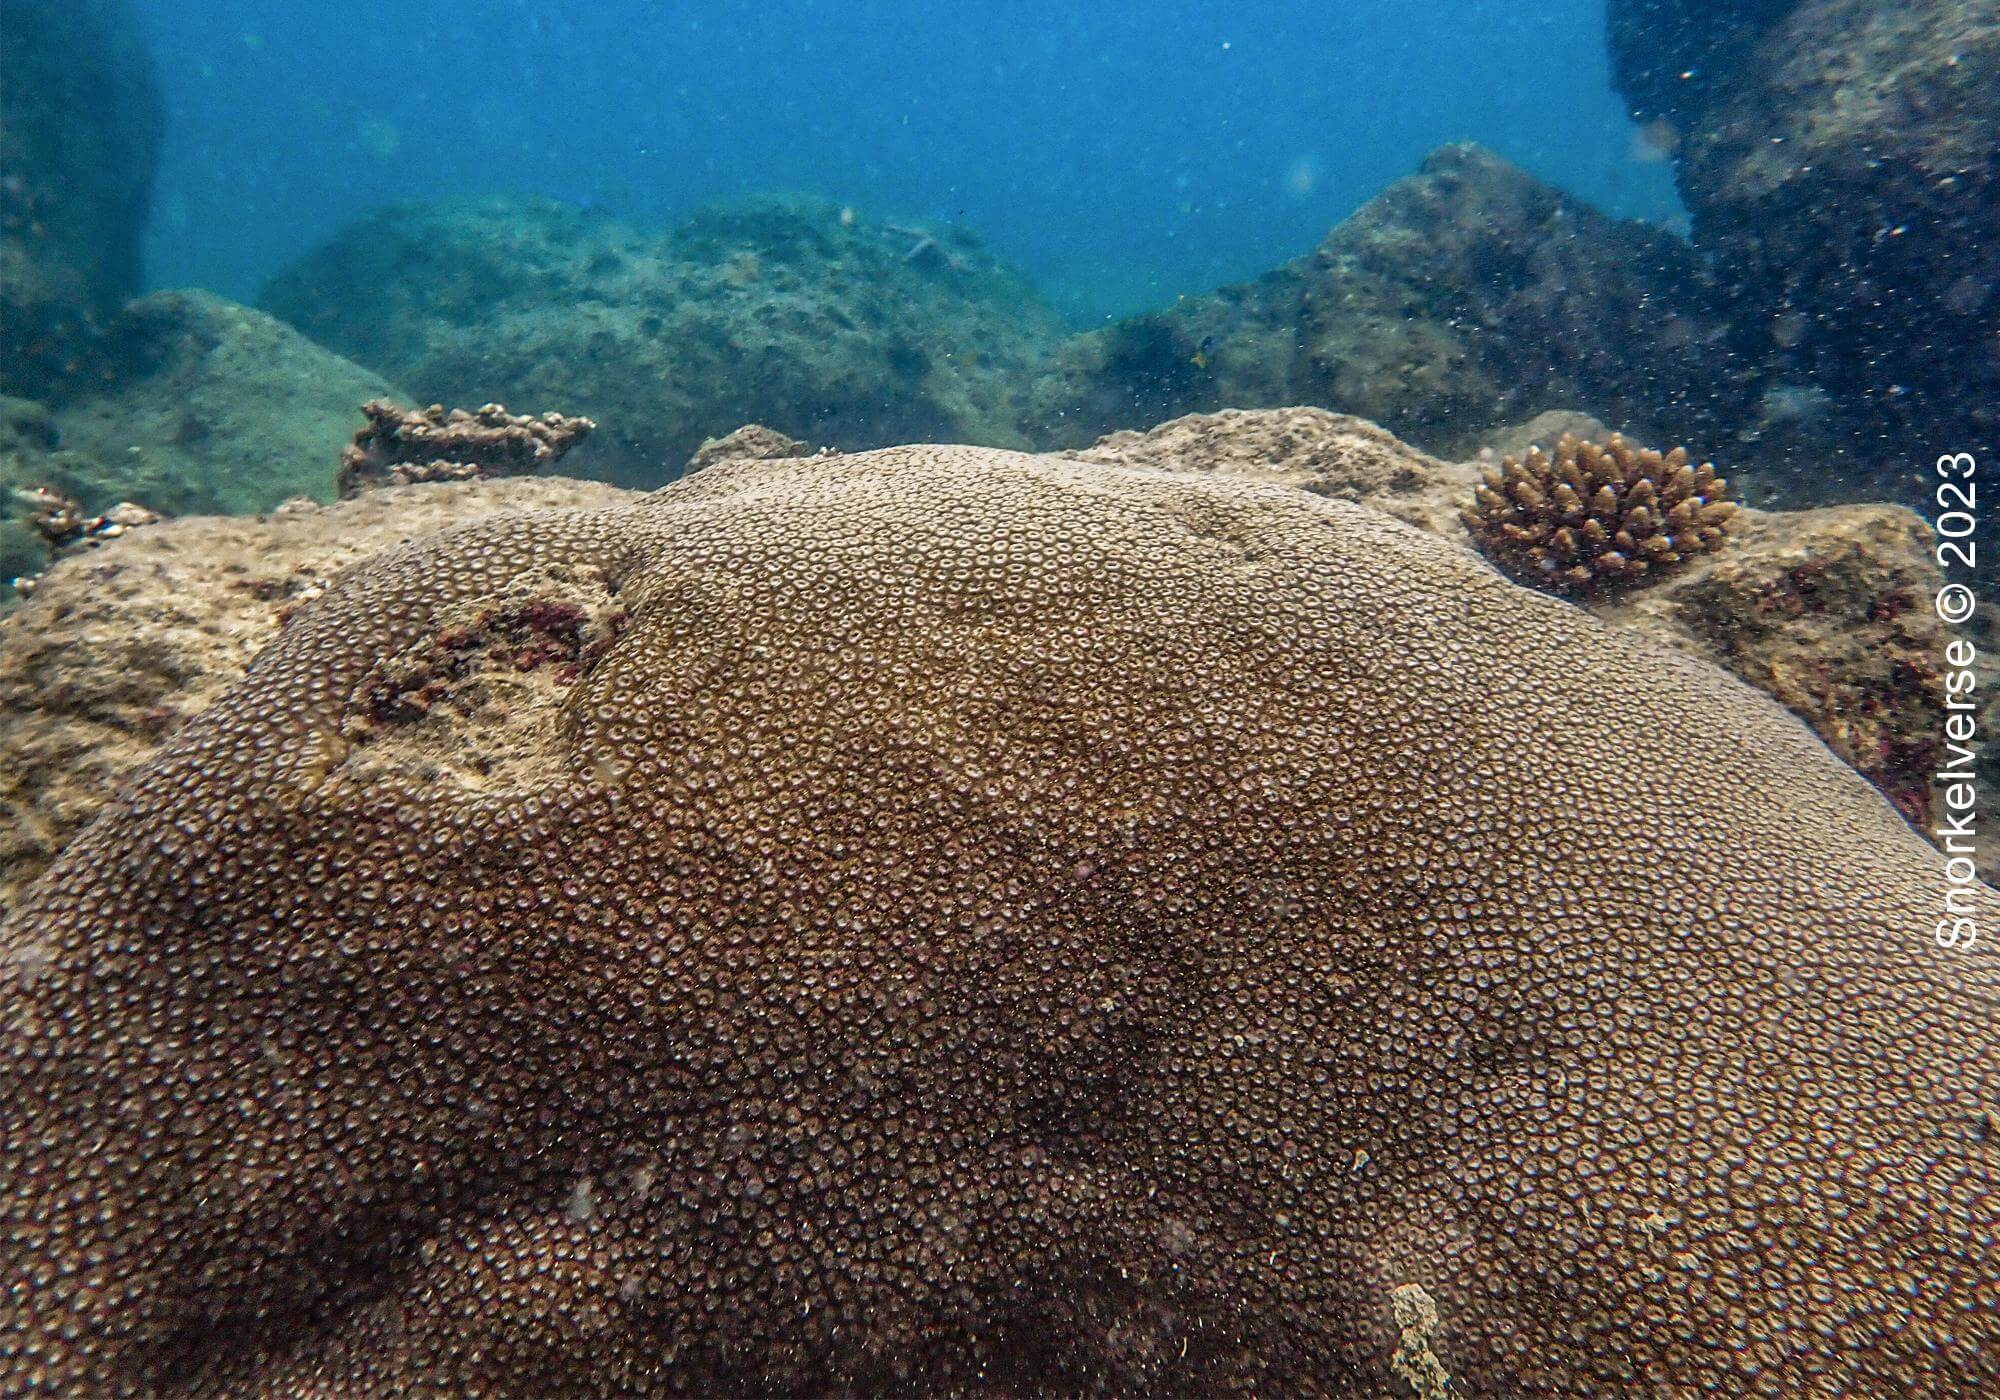 Boulder Star Coral